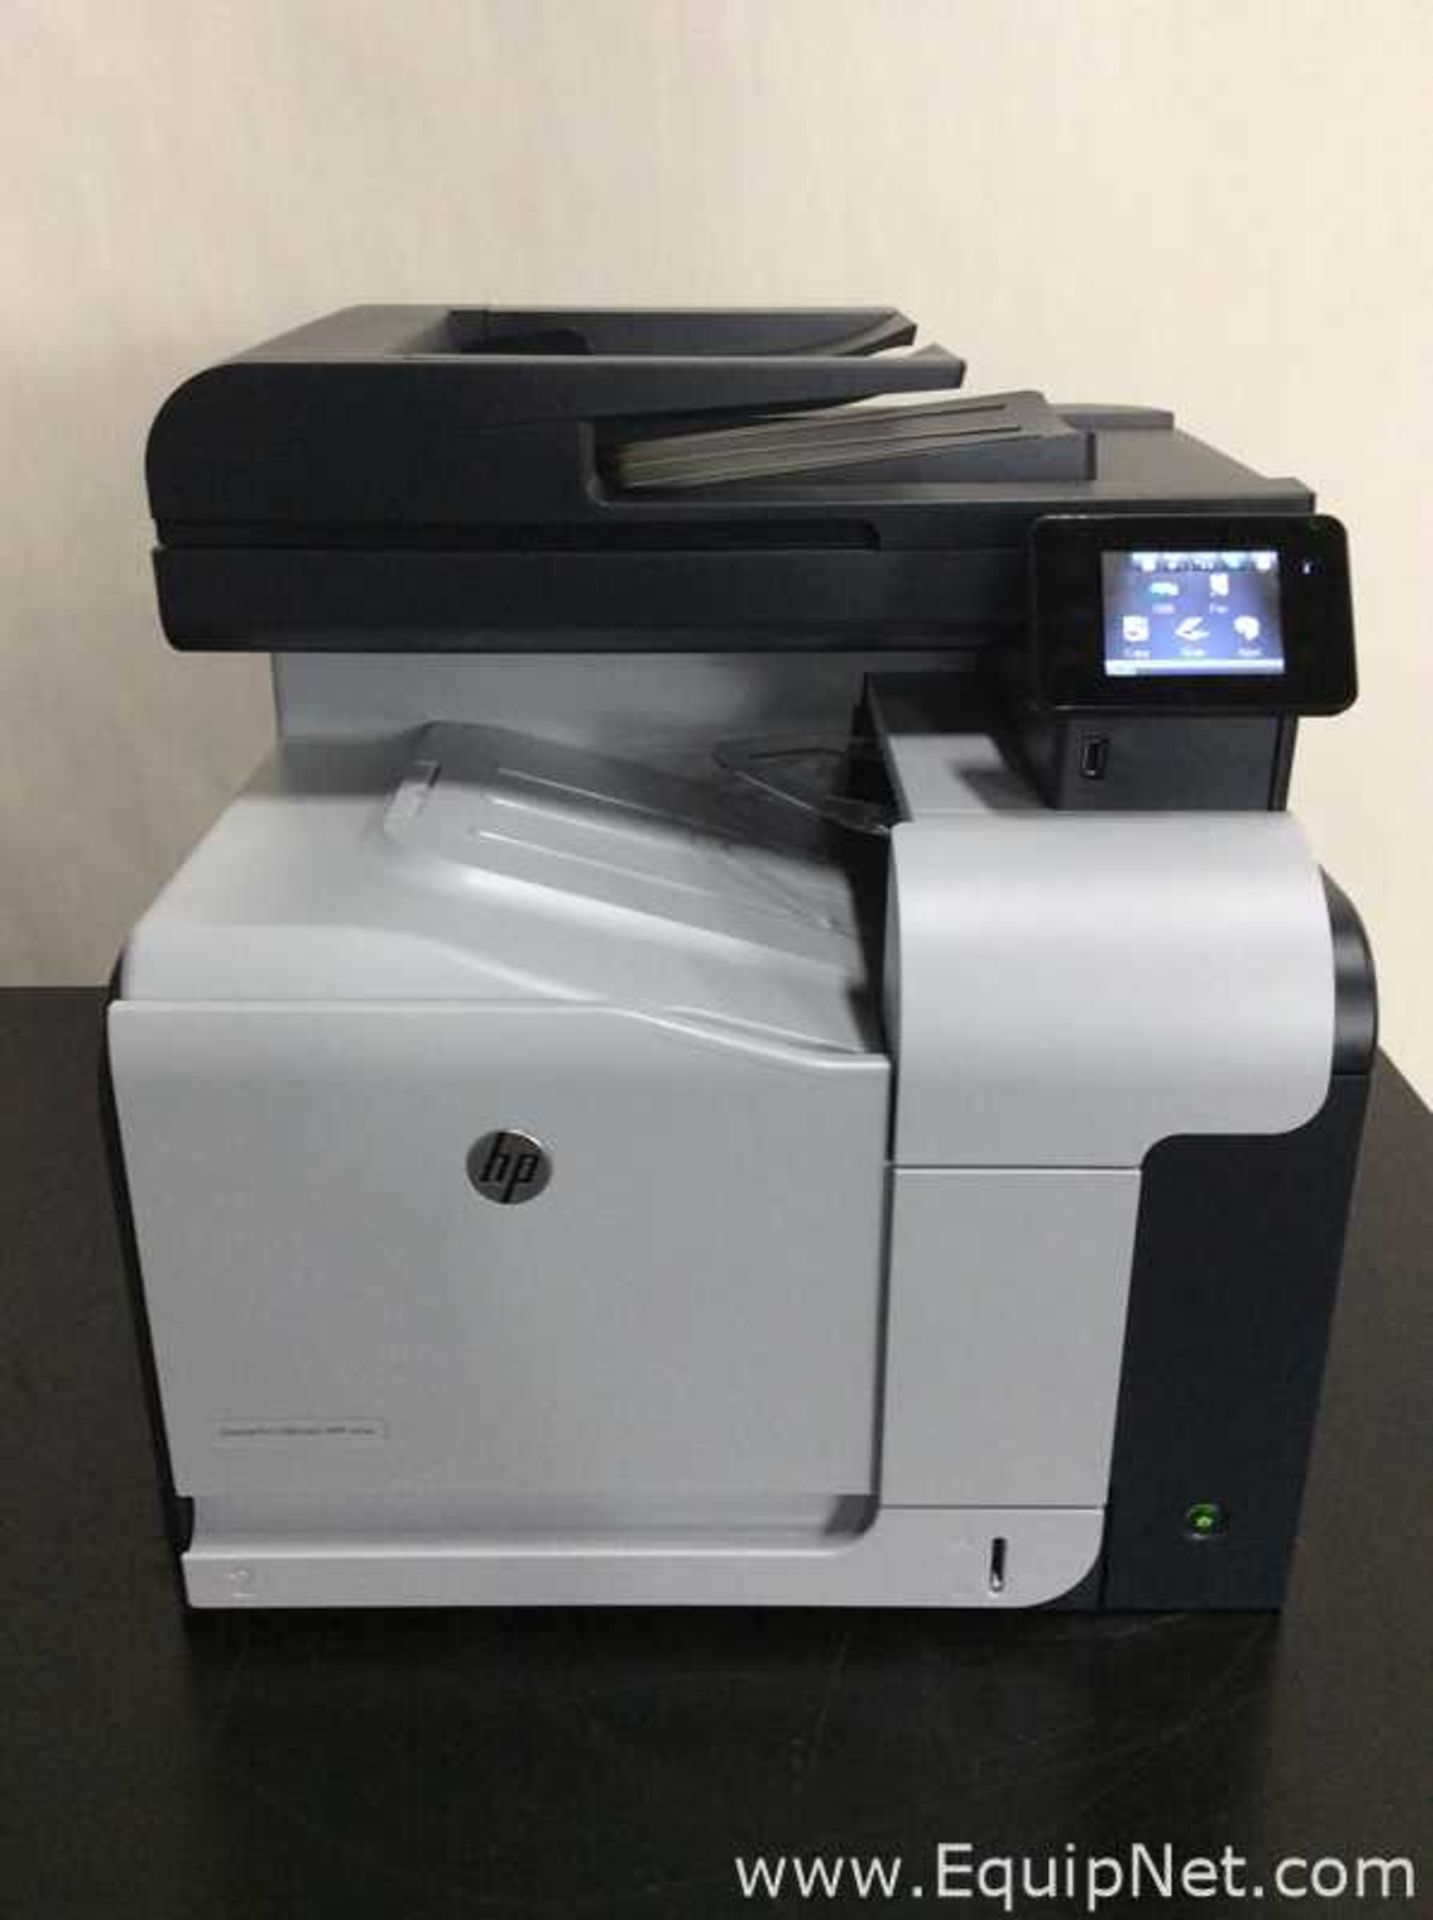 Hewlett Packard CZ271A Laserjet Pro 500 Printer